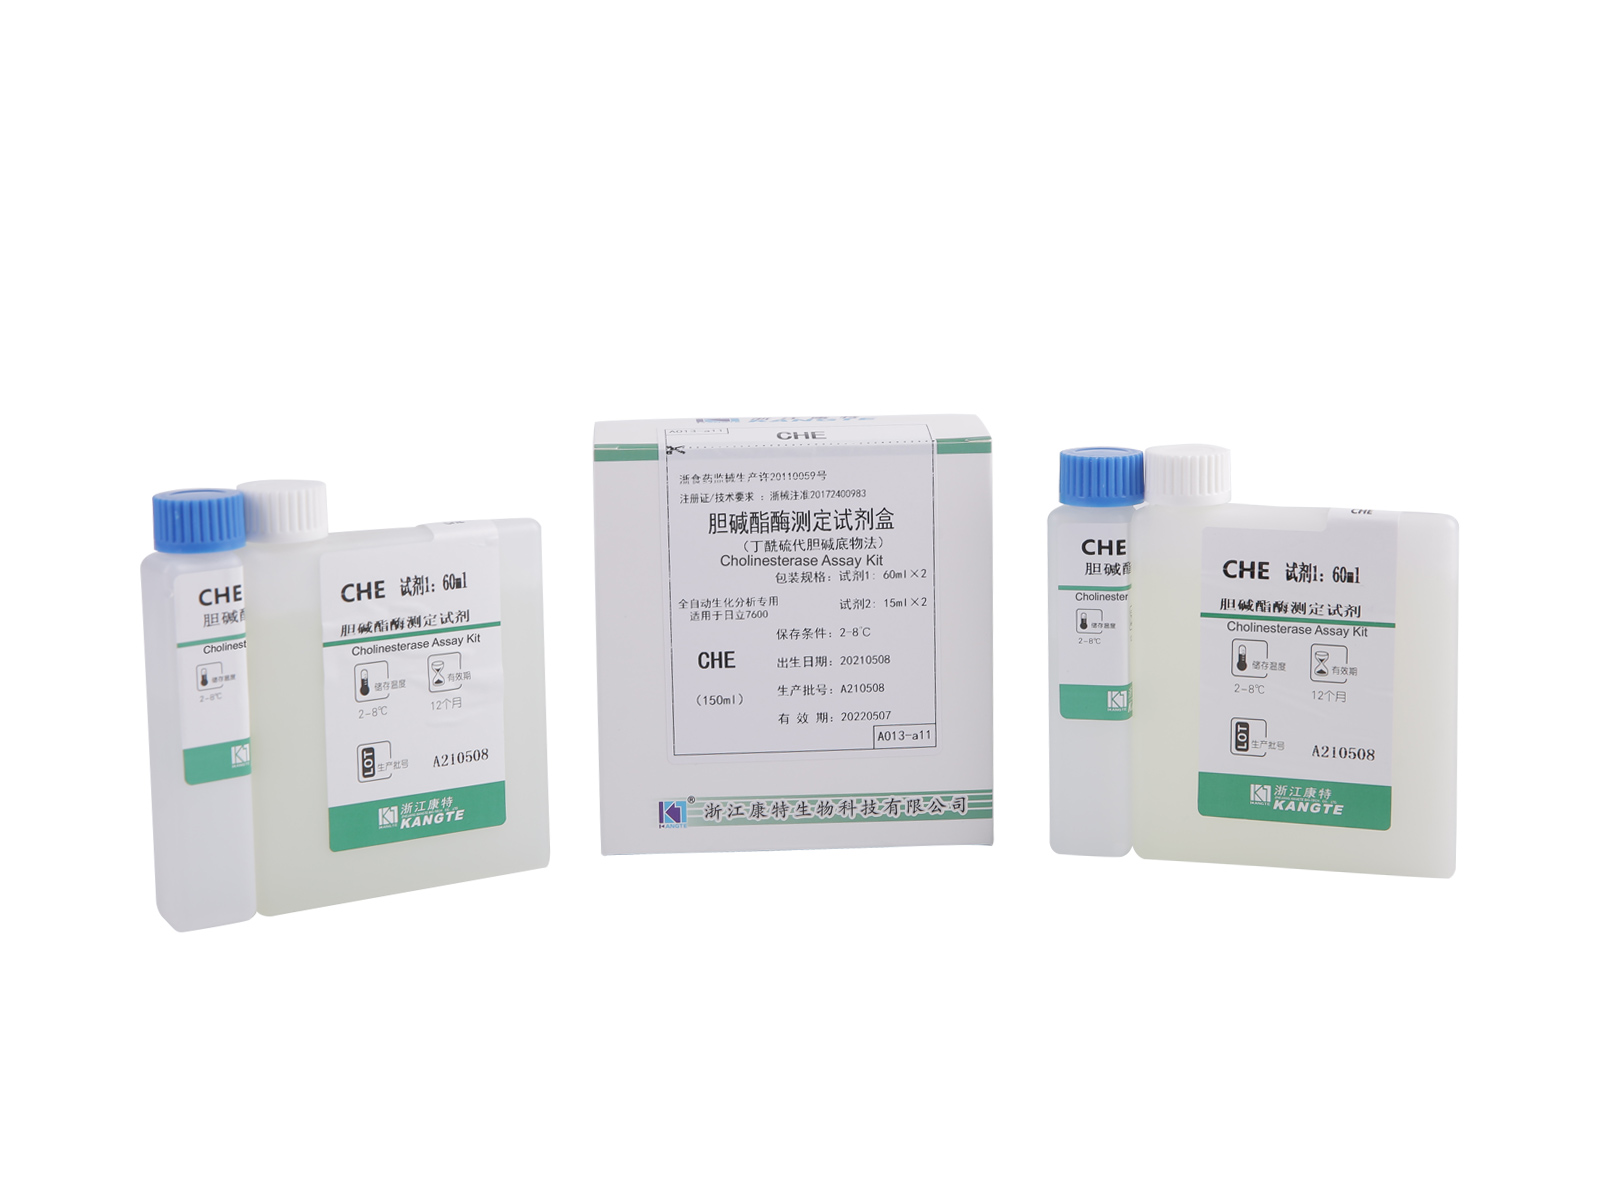 【CHE】 Kit de dosage de la cholinestérase (méthode du substrat de butyrylthiocholine)